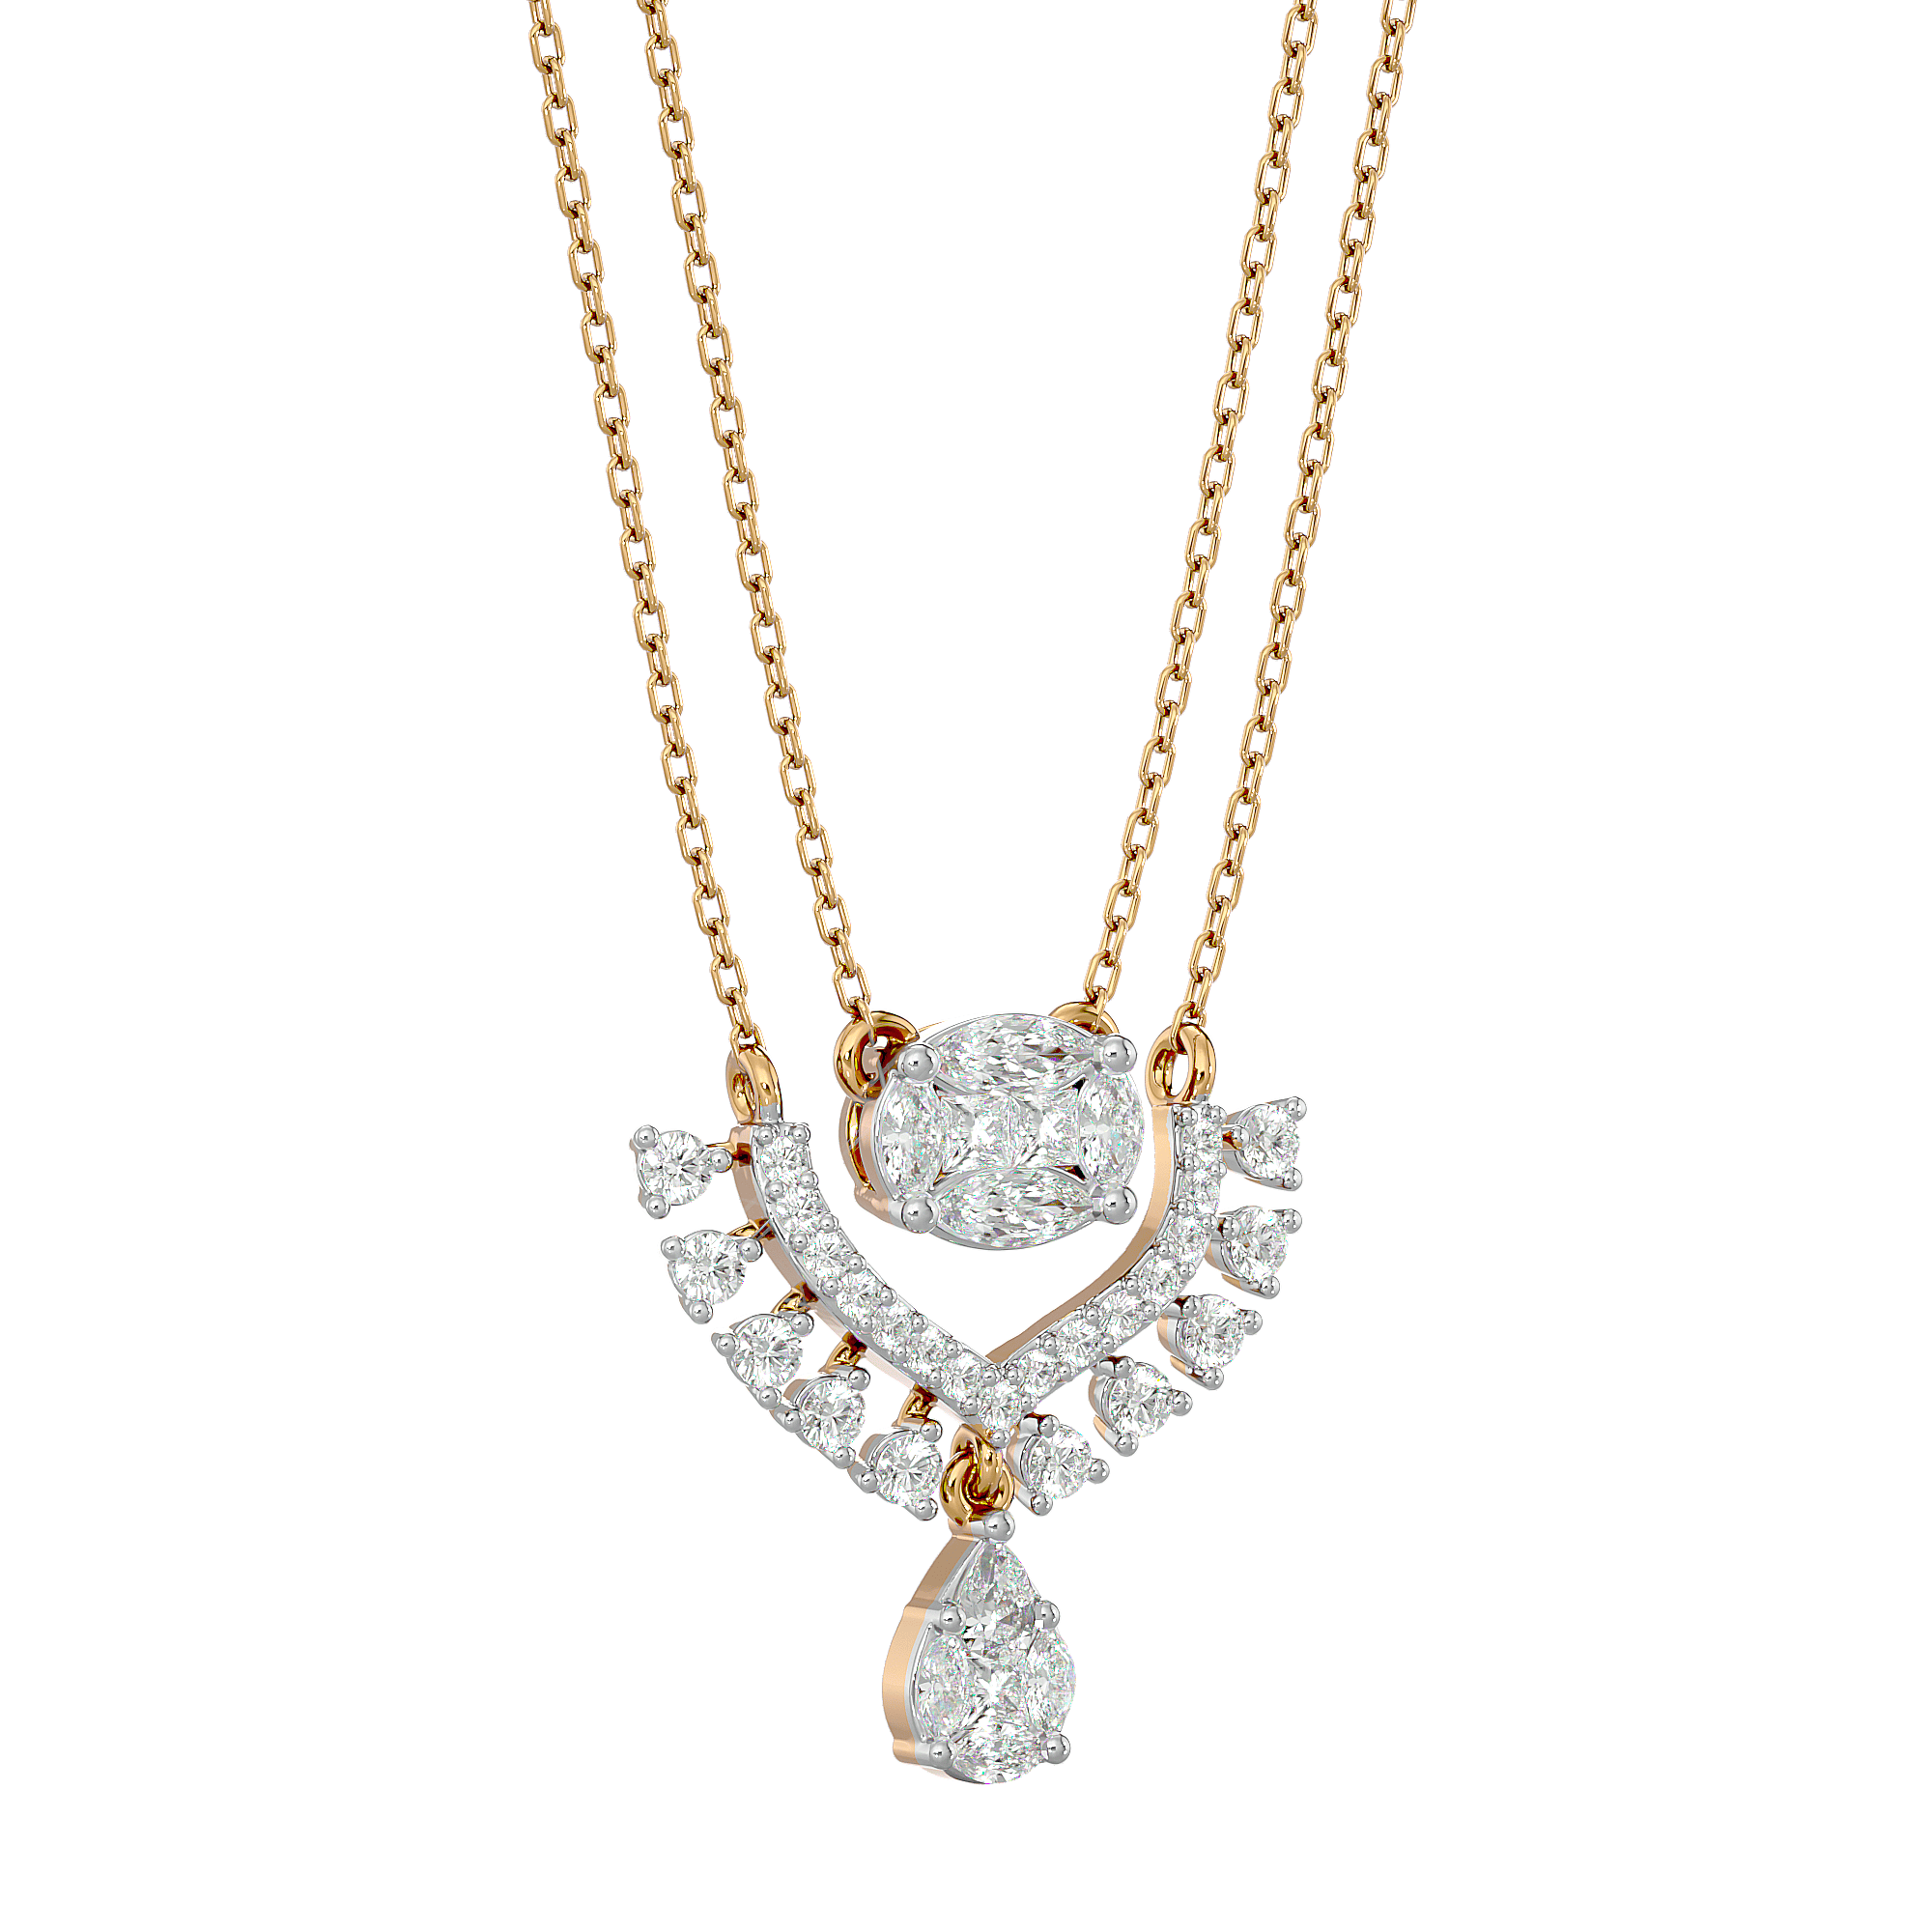 14K Gold Single Diamond Necklace, Best Price Today!